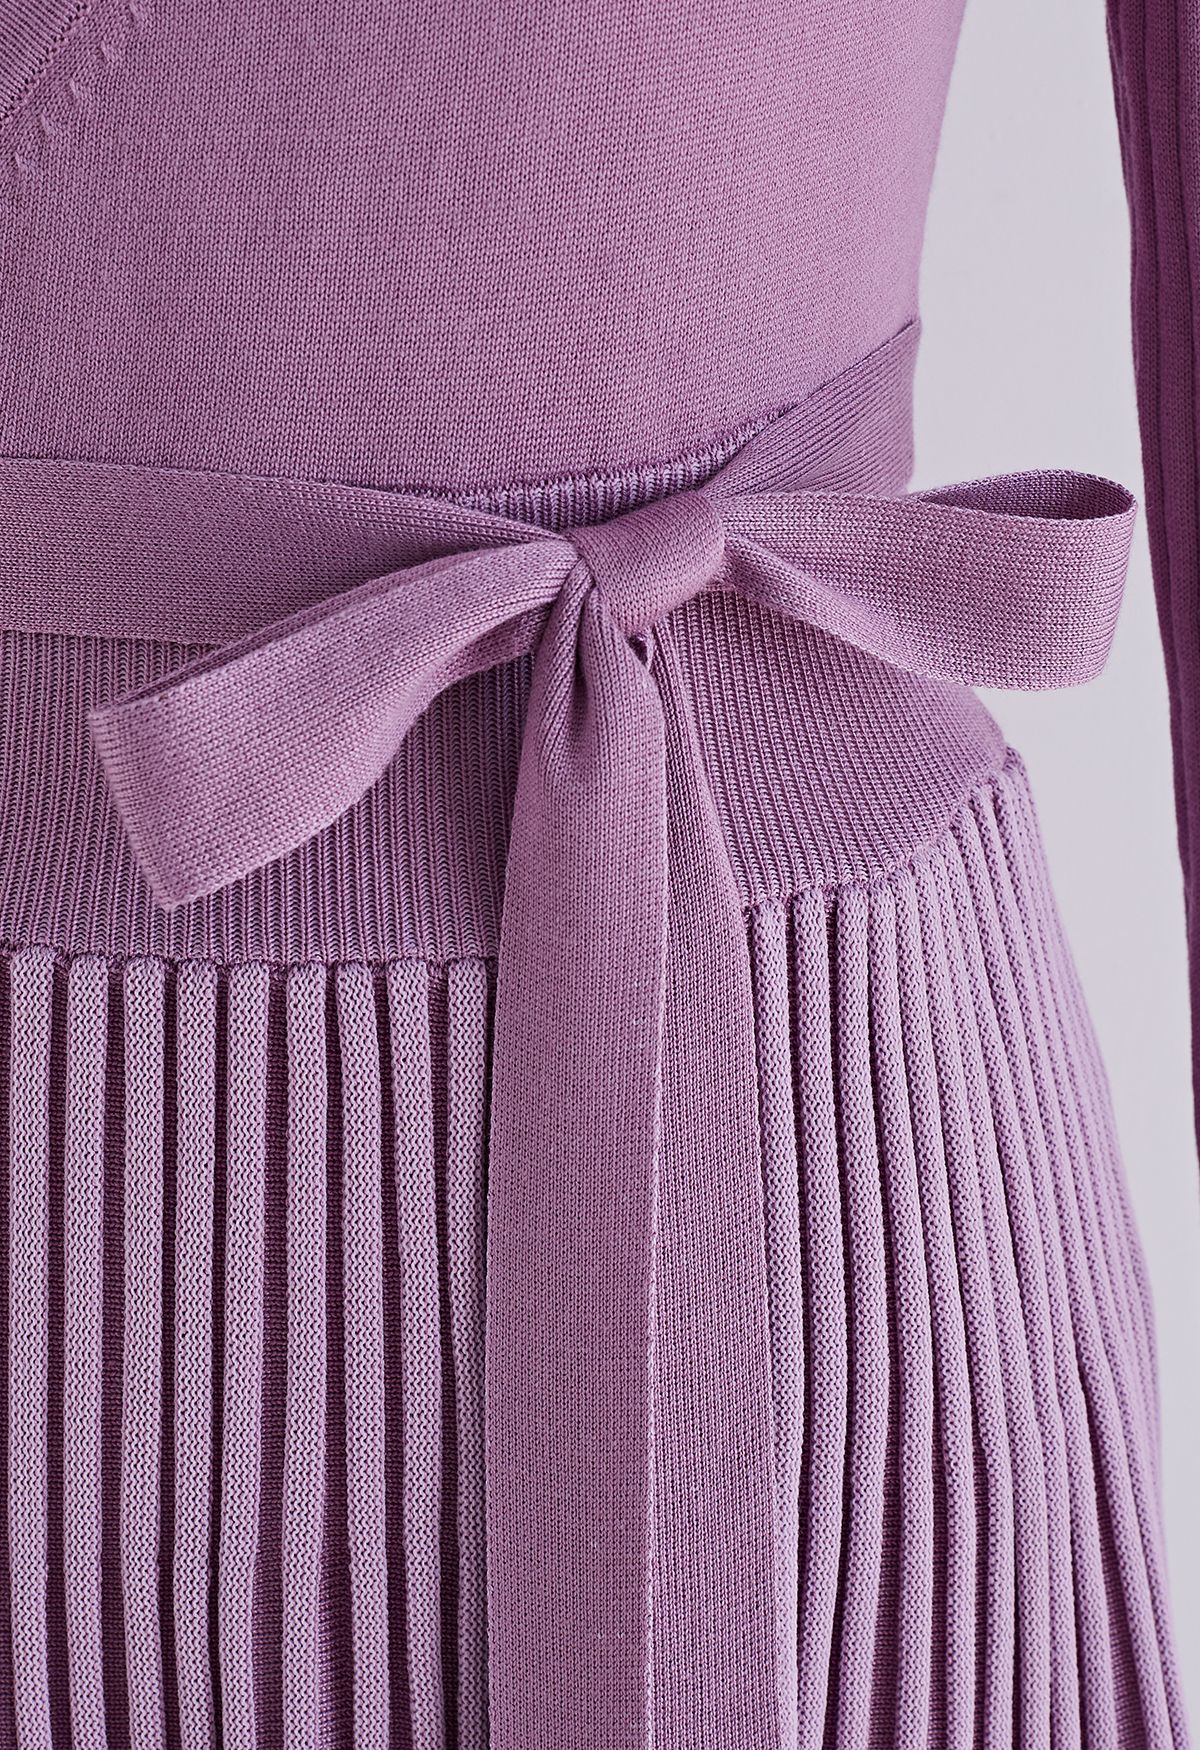 Embrassez une robe tricotée souple en lilas